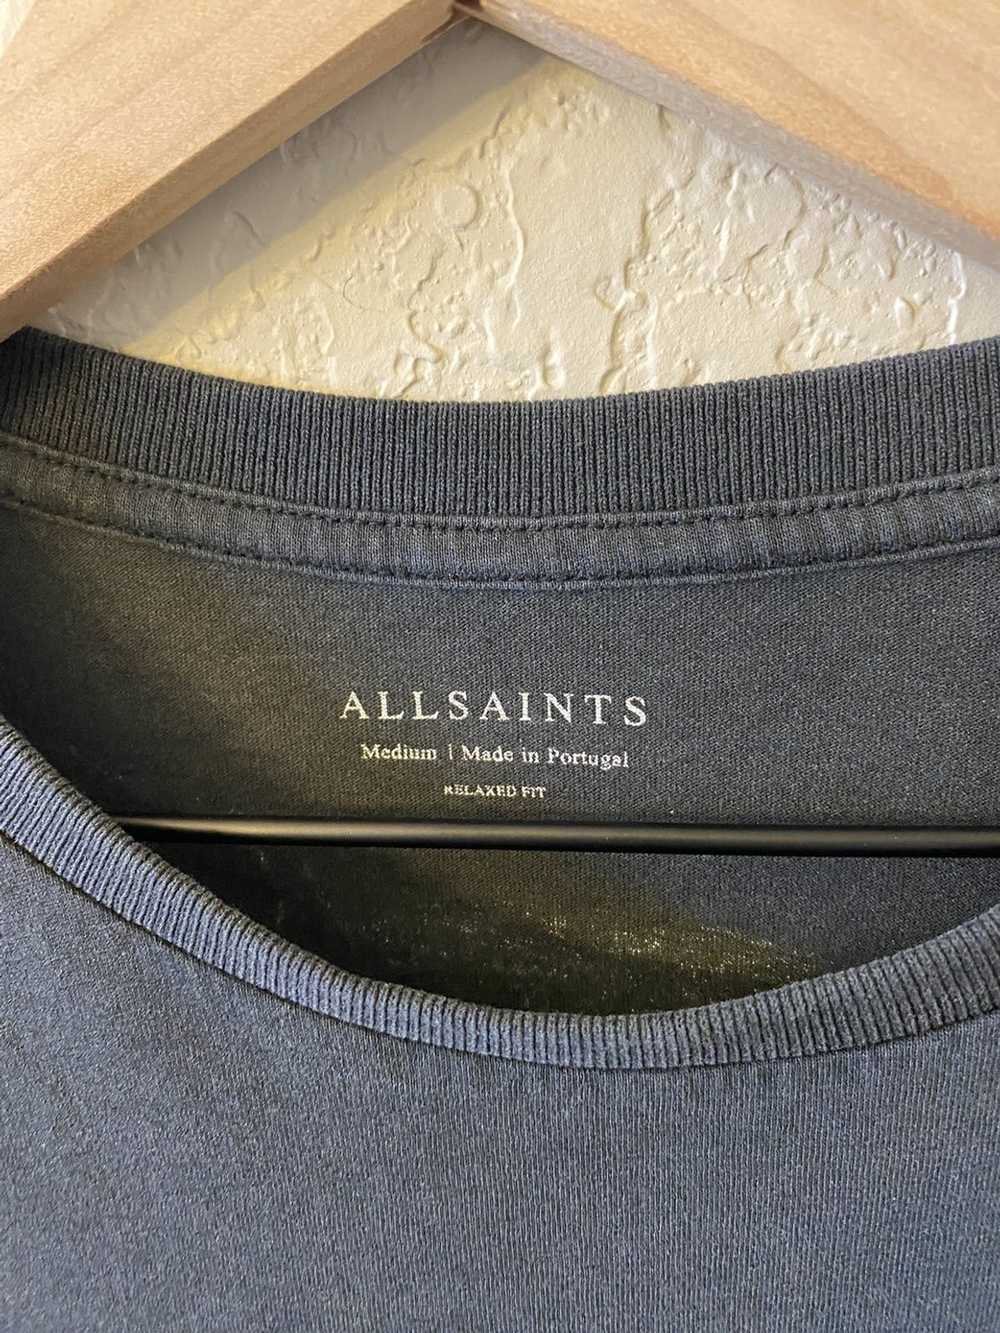 Allsaints All Saints Long Sleeve Tee- Medium - image 3